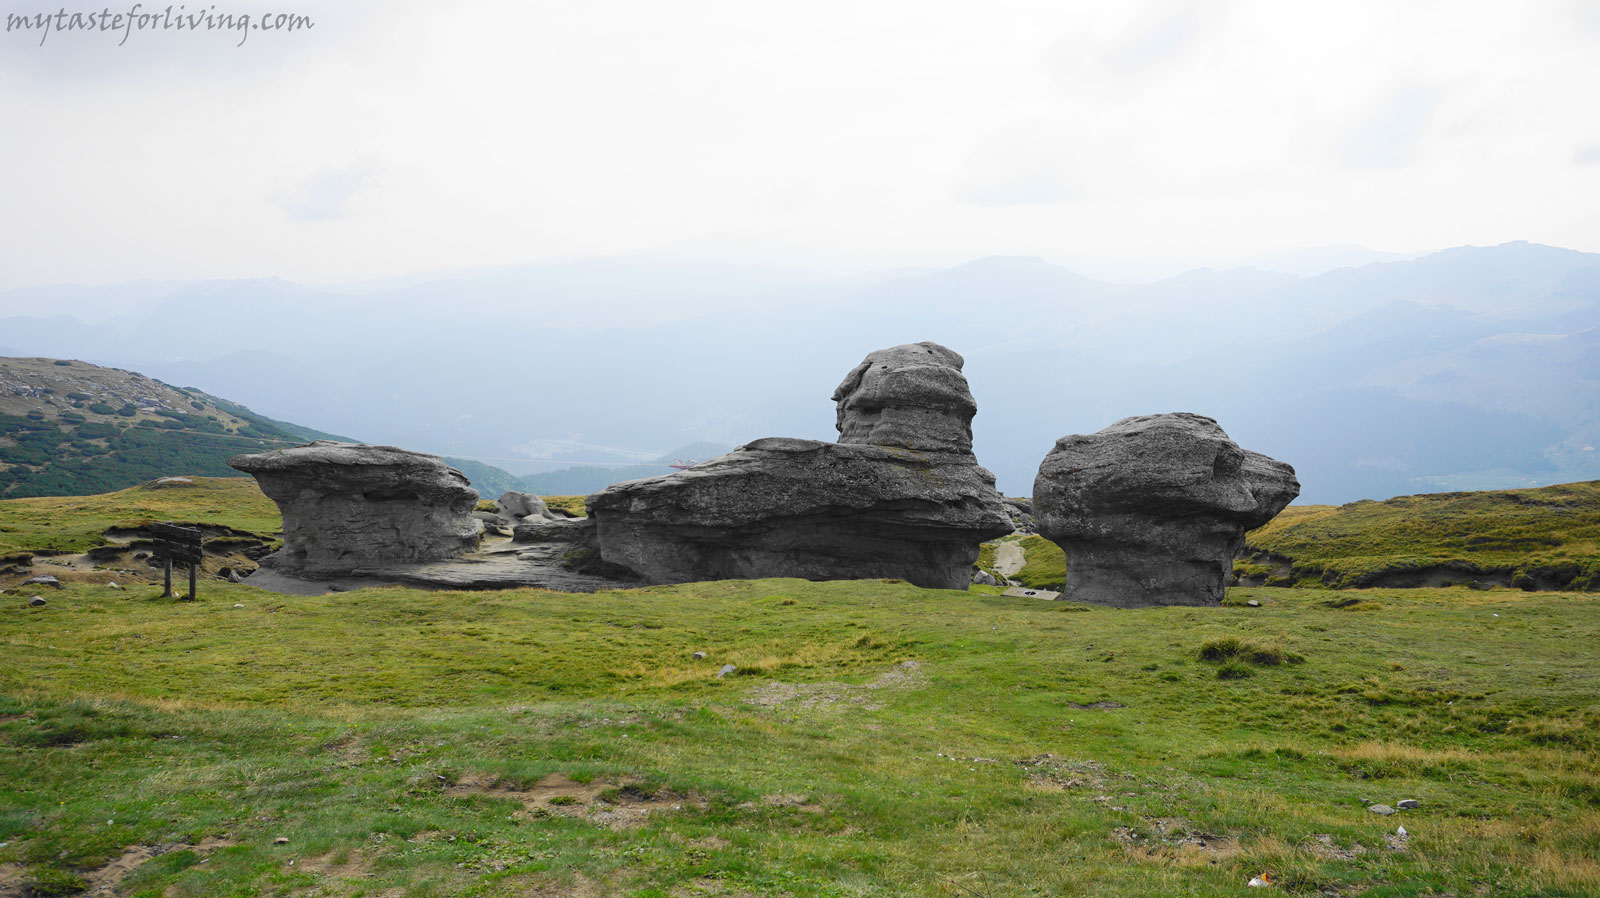 Сфинксът и Бабеле са в списъка на седемте природни чудеса на Румъния и са едни от най-посещаваните места в страната. Намират се в планината Бучеджи, която принадлежи към планинската верига Карпати. 